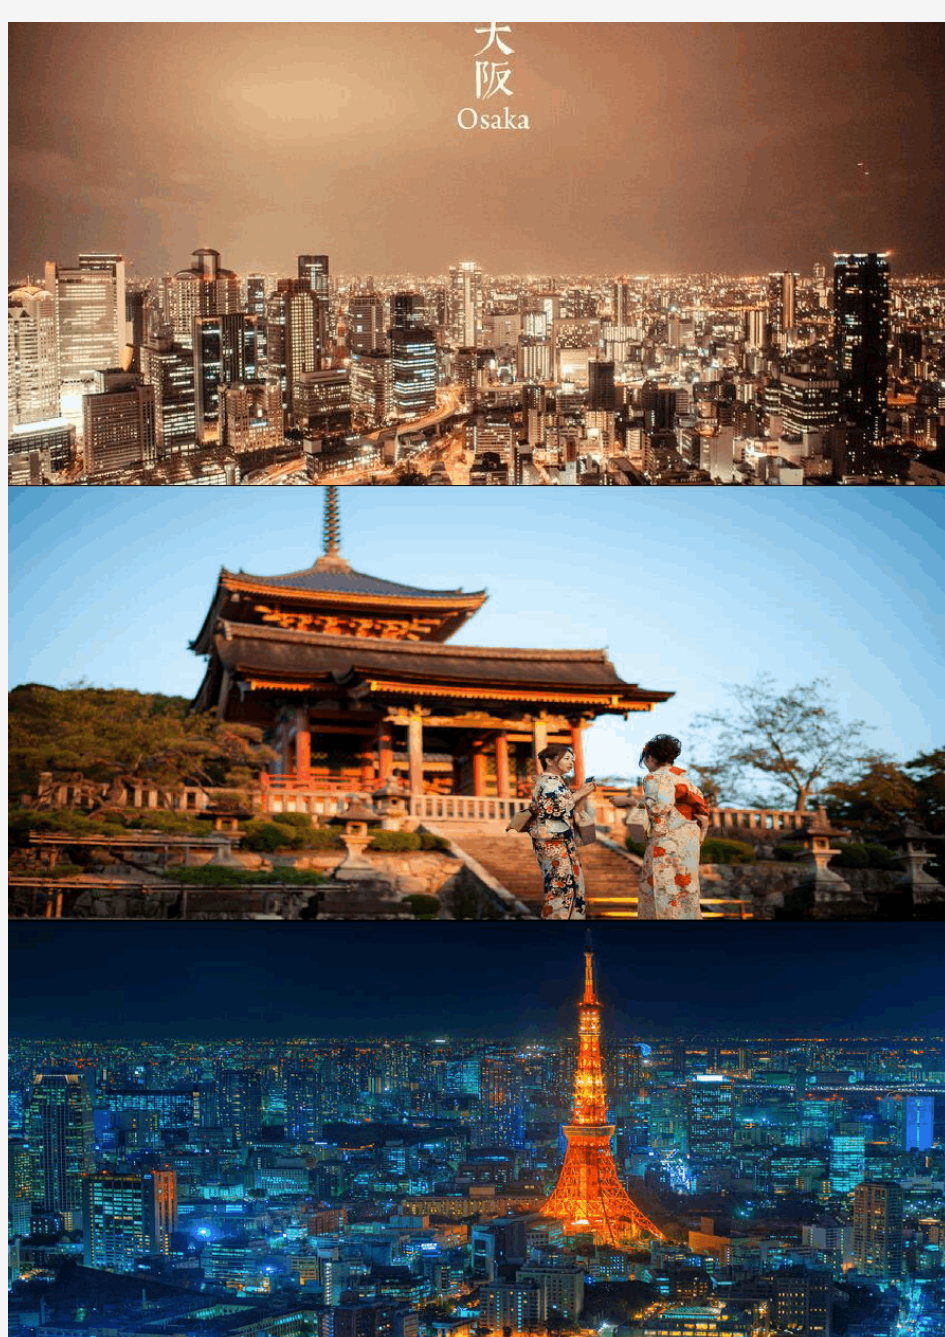 日本建筑考察、旅游攻略